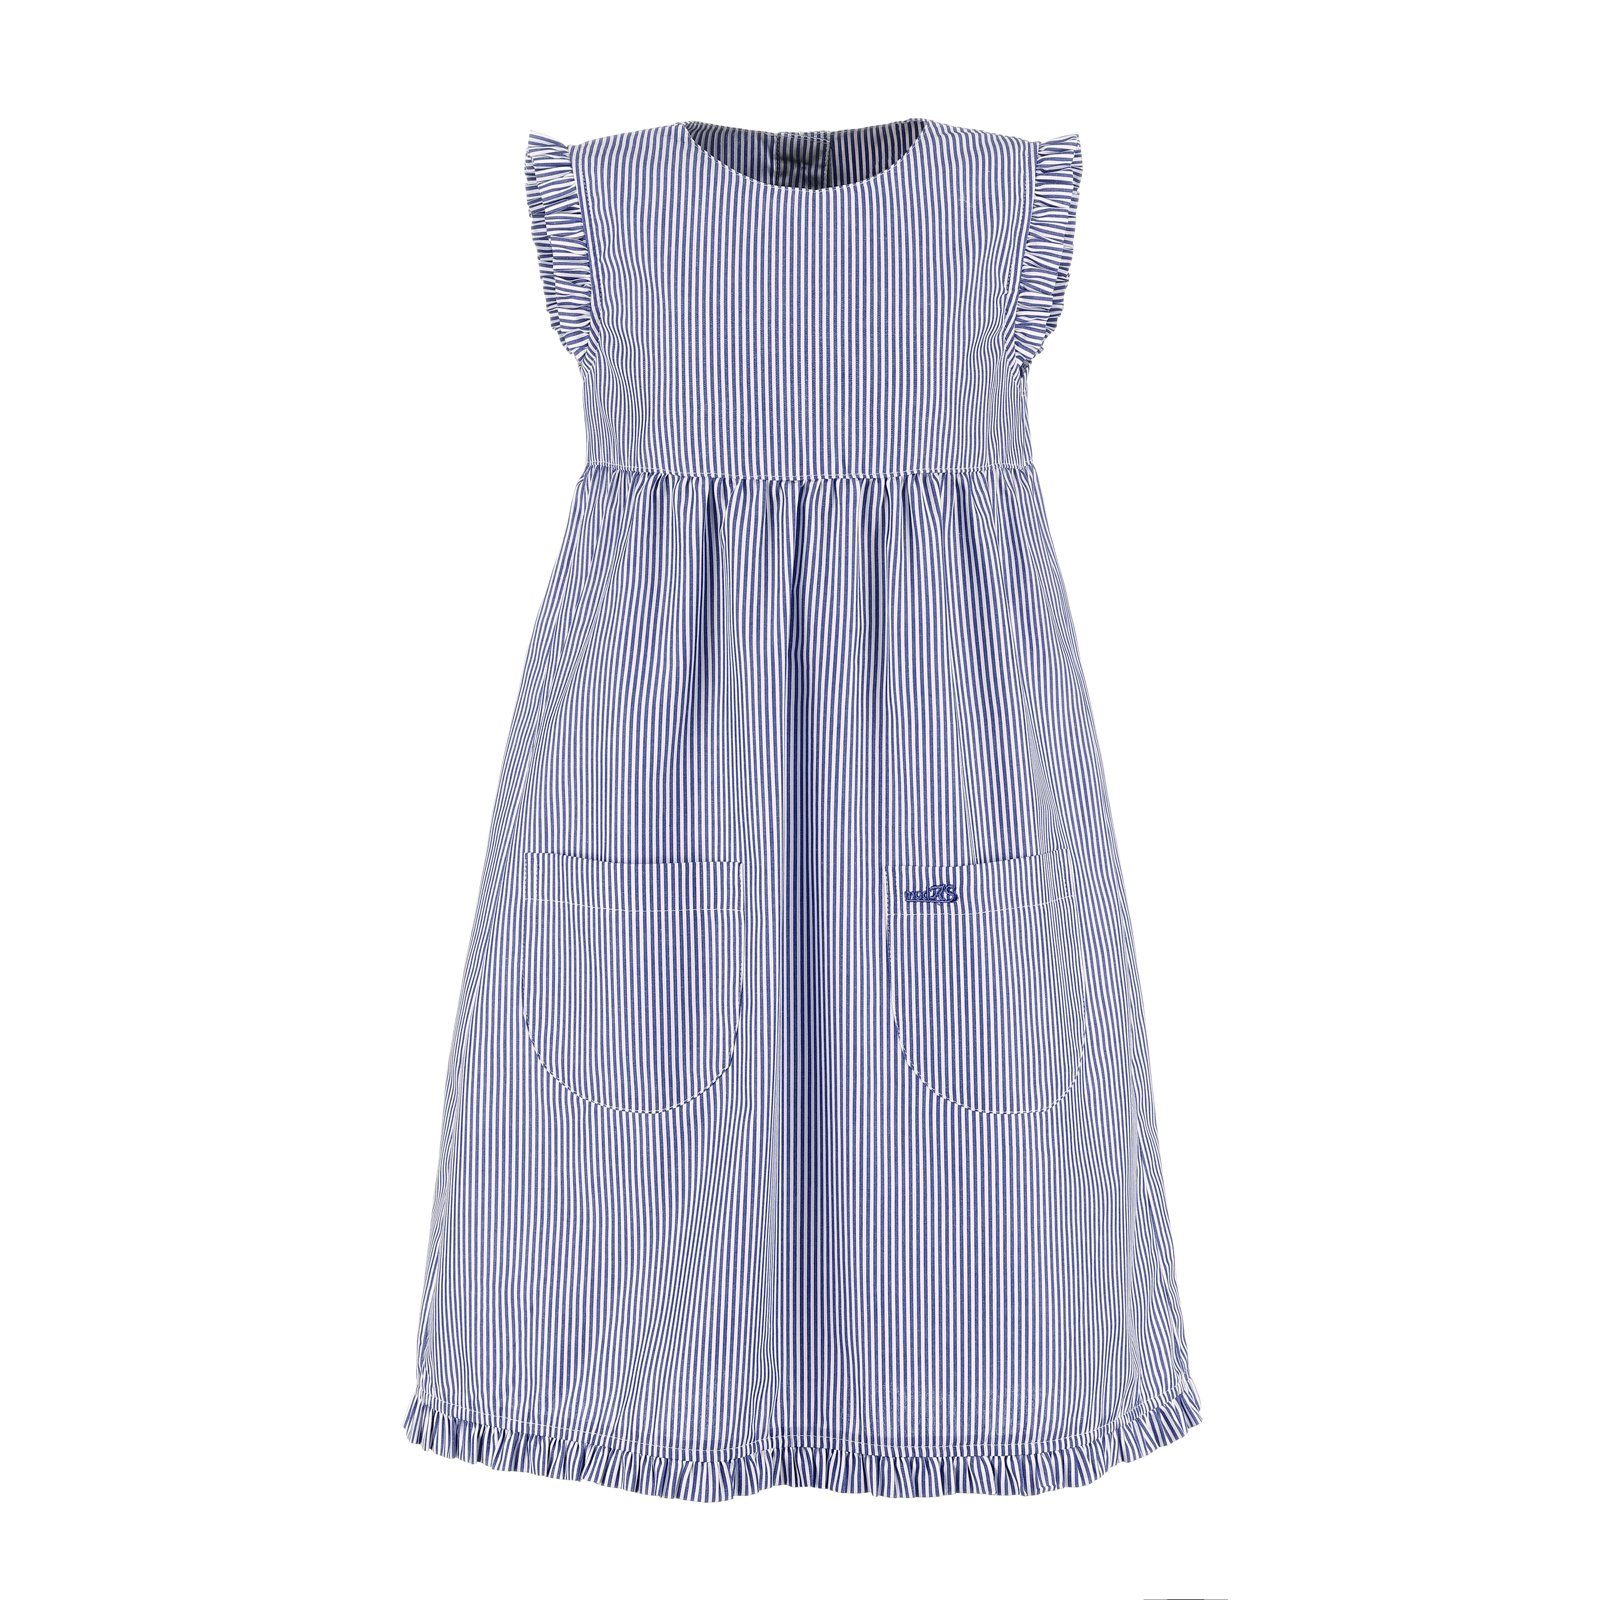 modAS Sommerkleid Kinder Kleid gestreift mit Rüschen - Mädchenkleid mit Streifen (054) marine / weiß gestreift